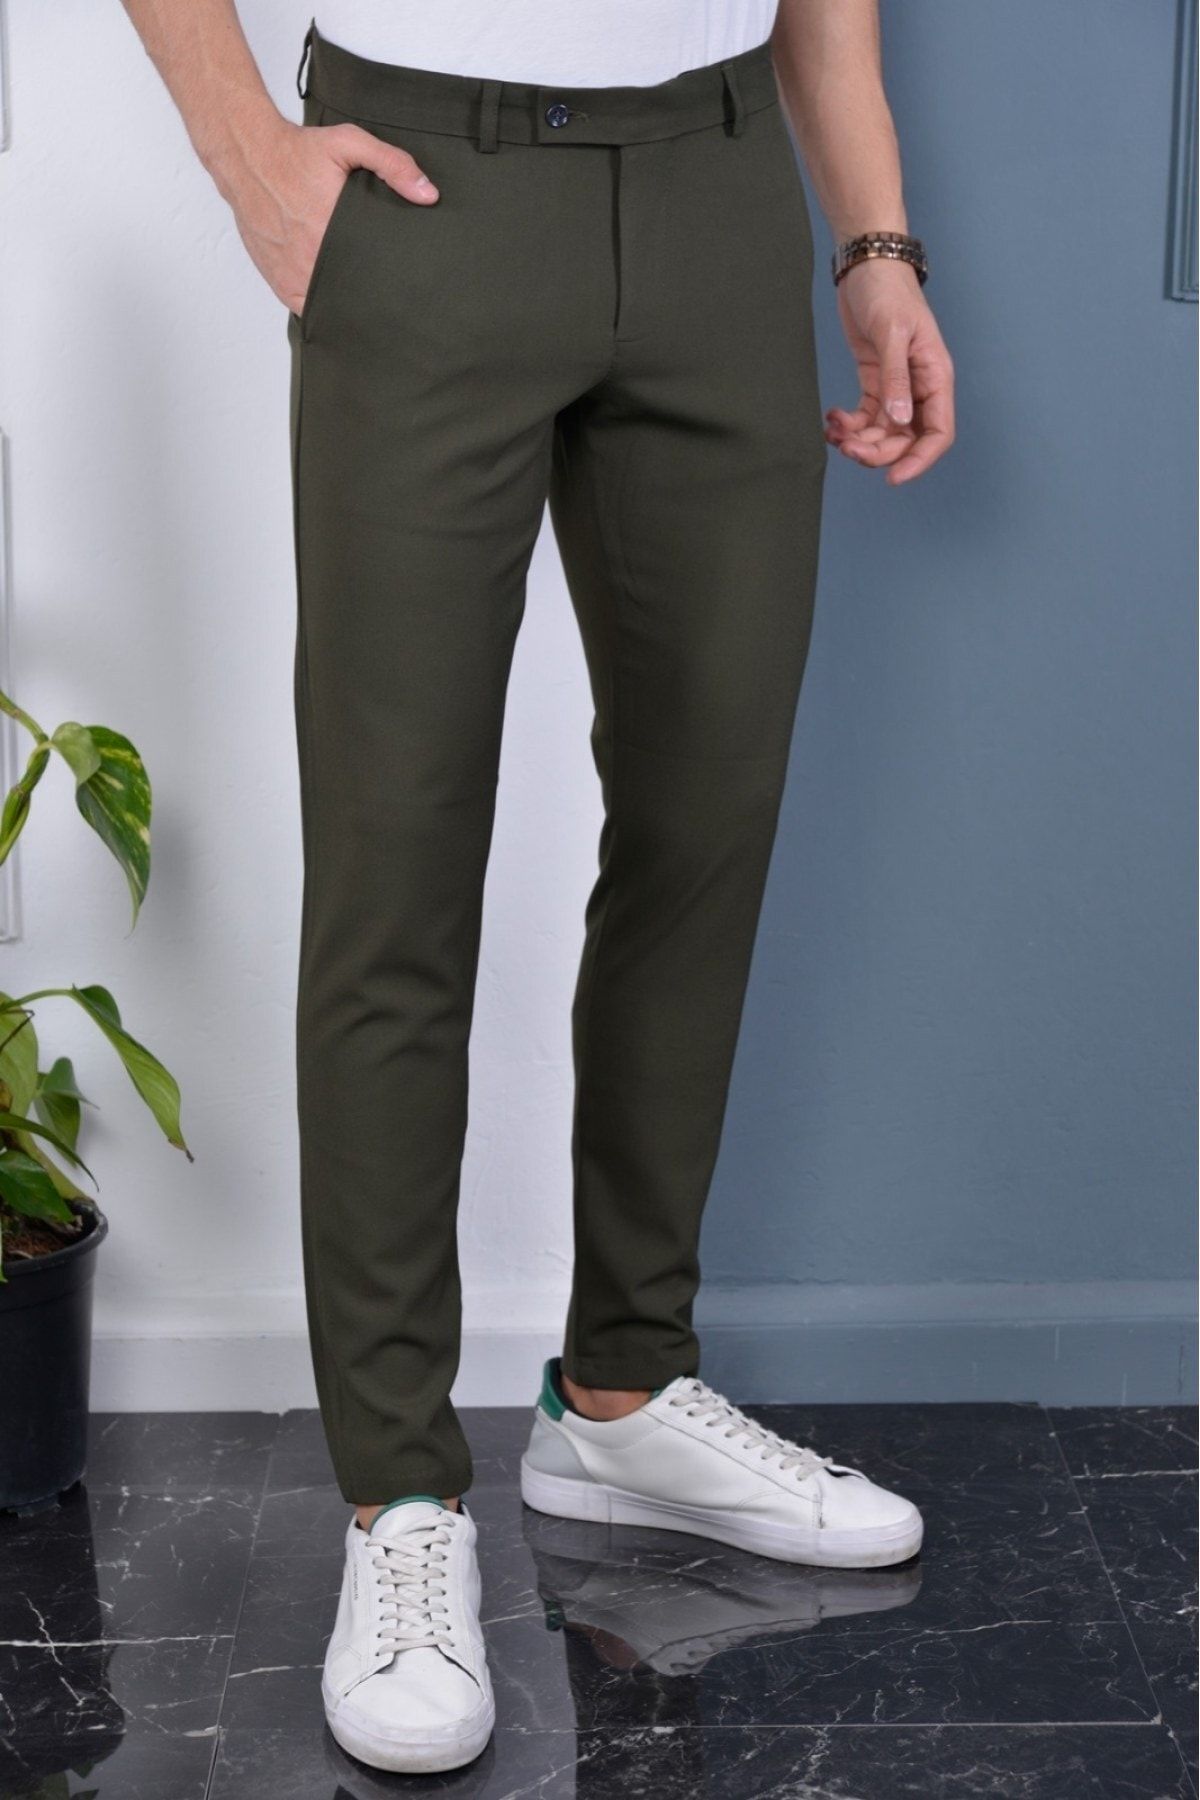 Gavazzi Erkek Haki Renk Italyan Kesim Kaliteli Esnek Likralı Bilek Boy Kumaş Pantolon